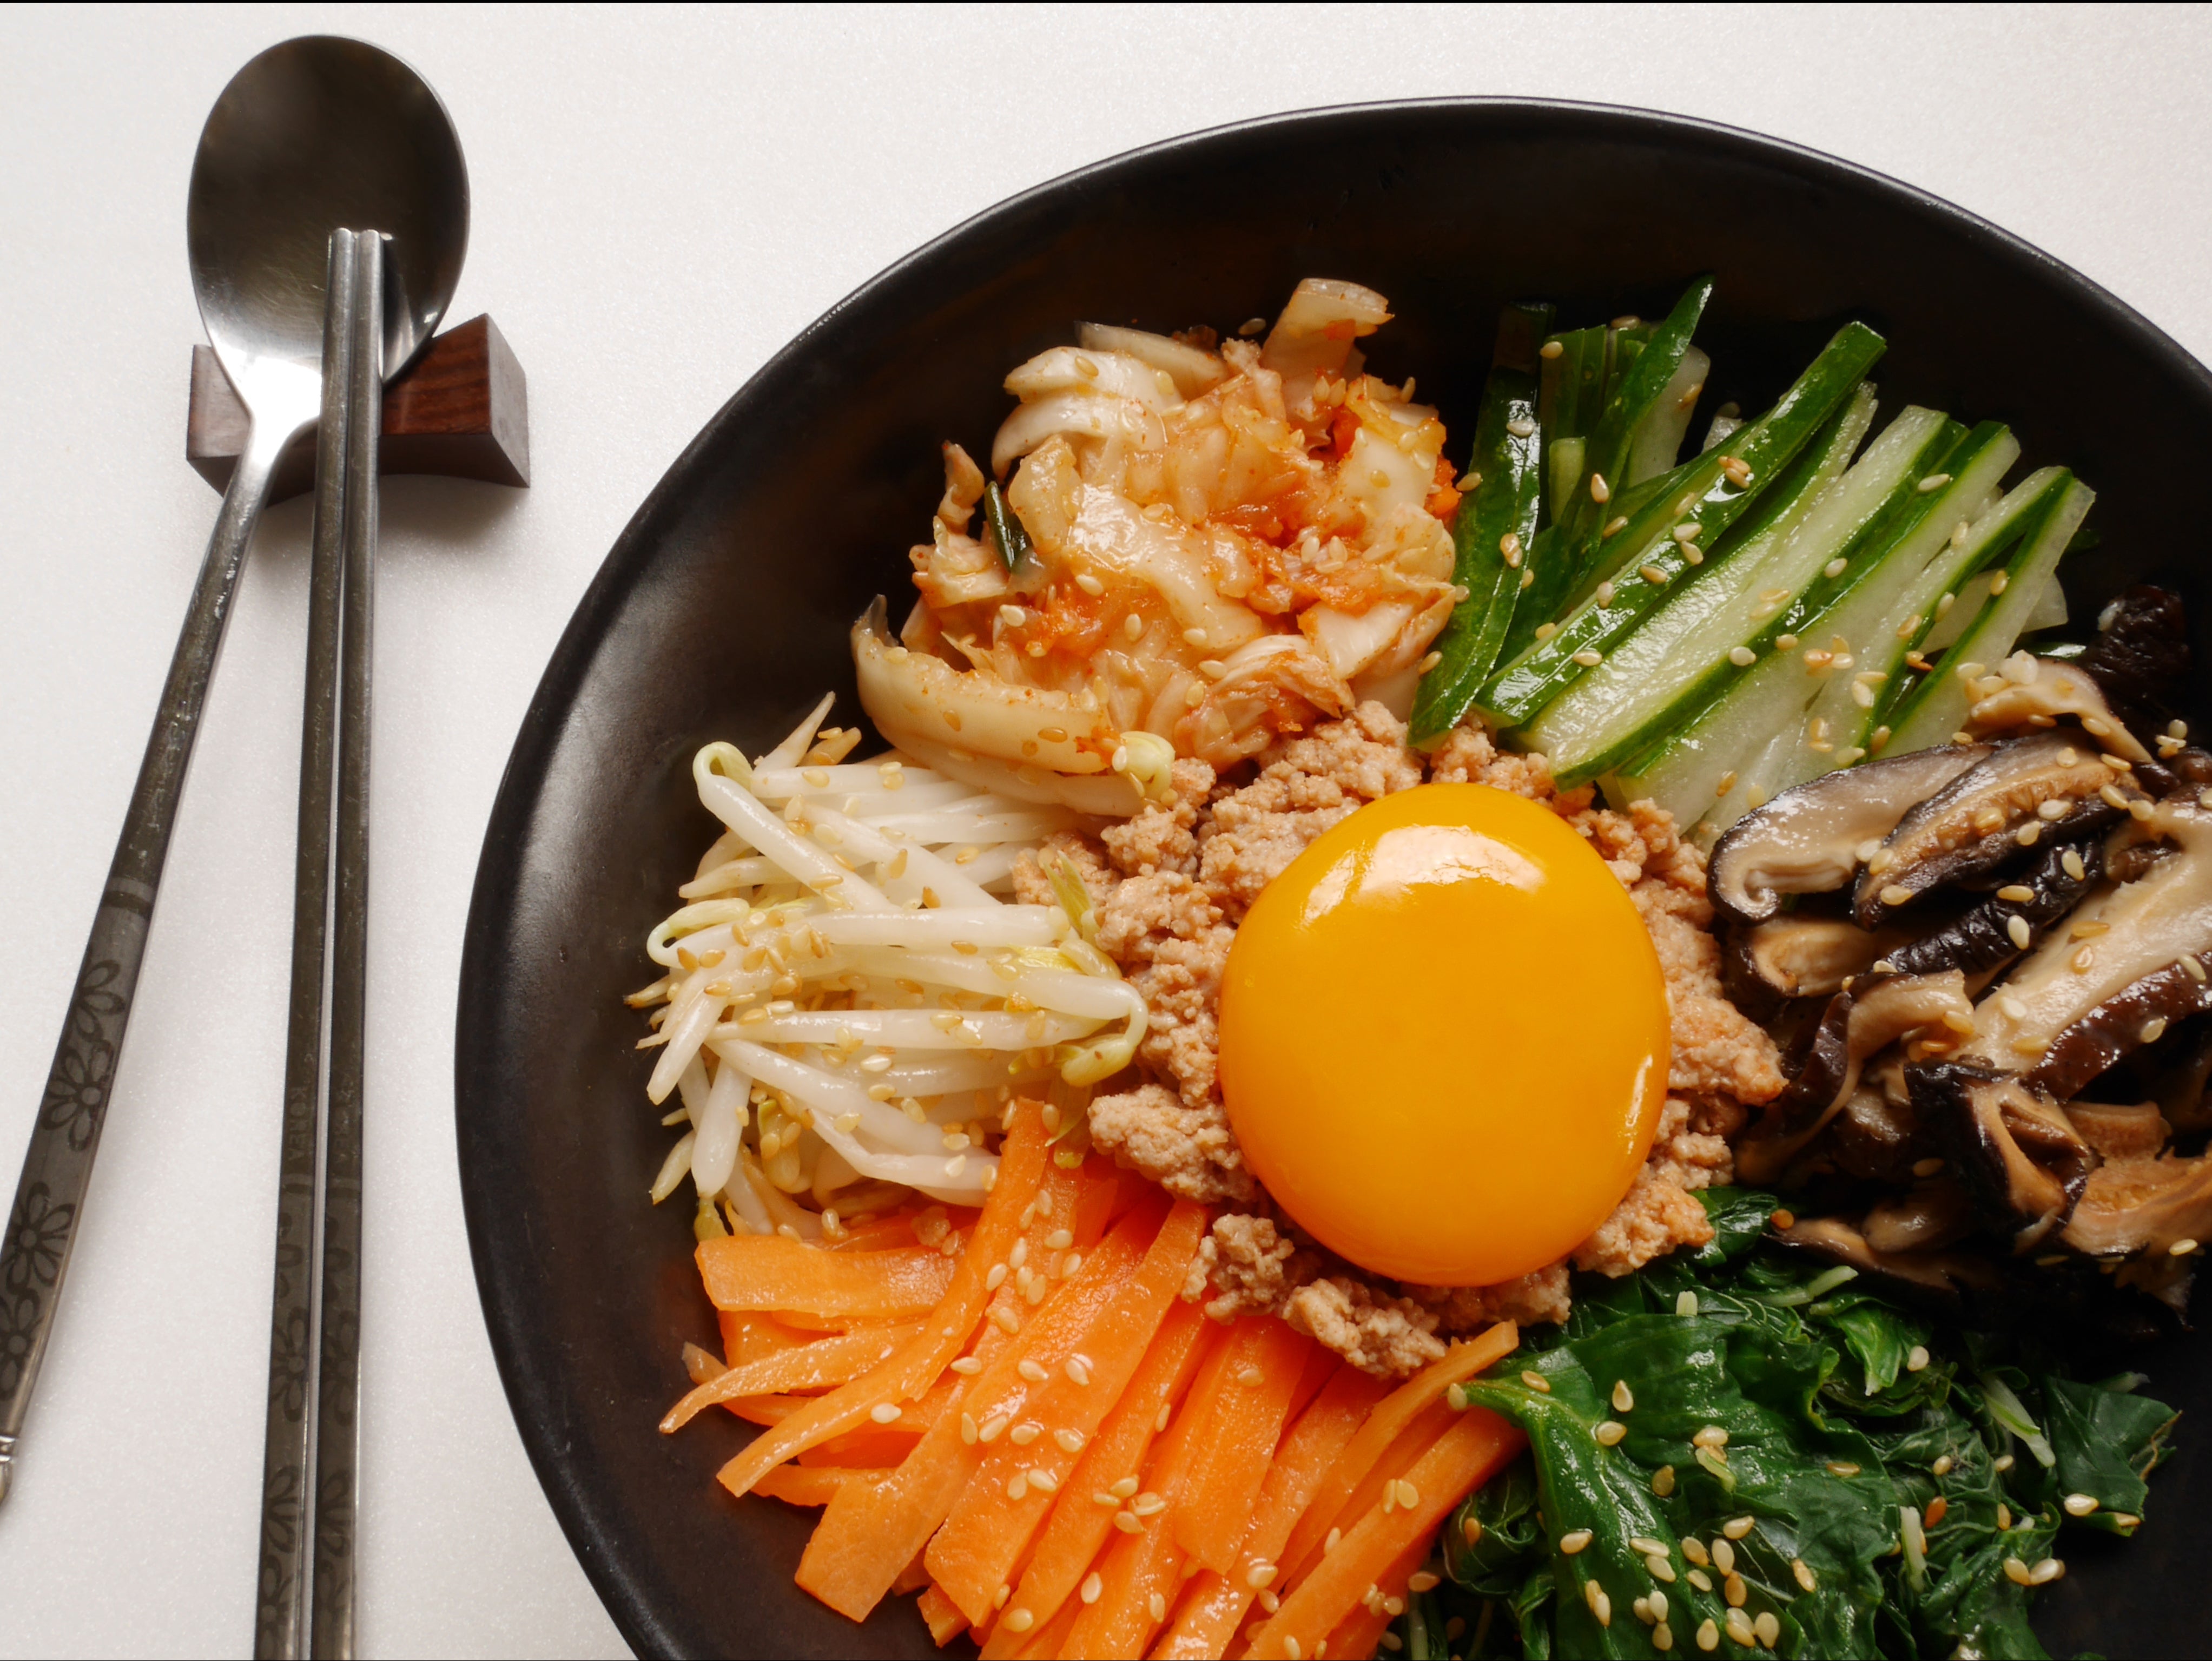 American Seoul: Eric Kim's Fresh New Take on Korean Cuisine